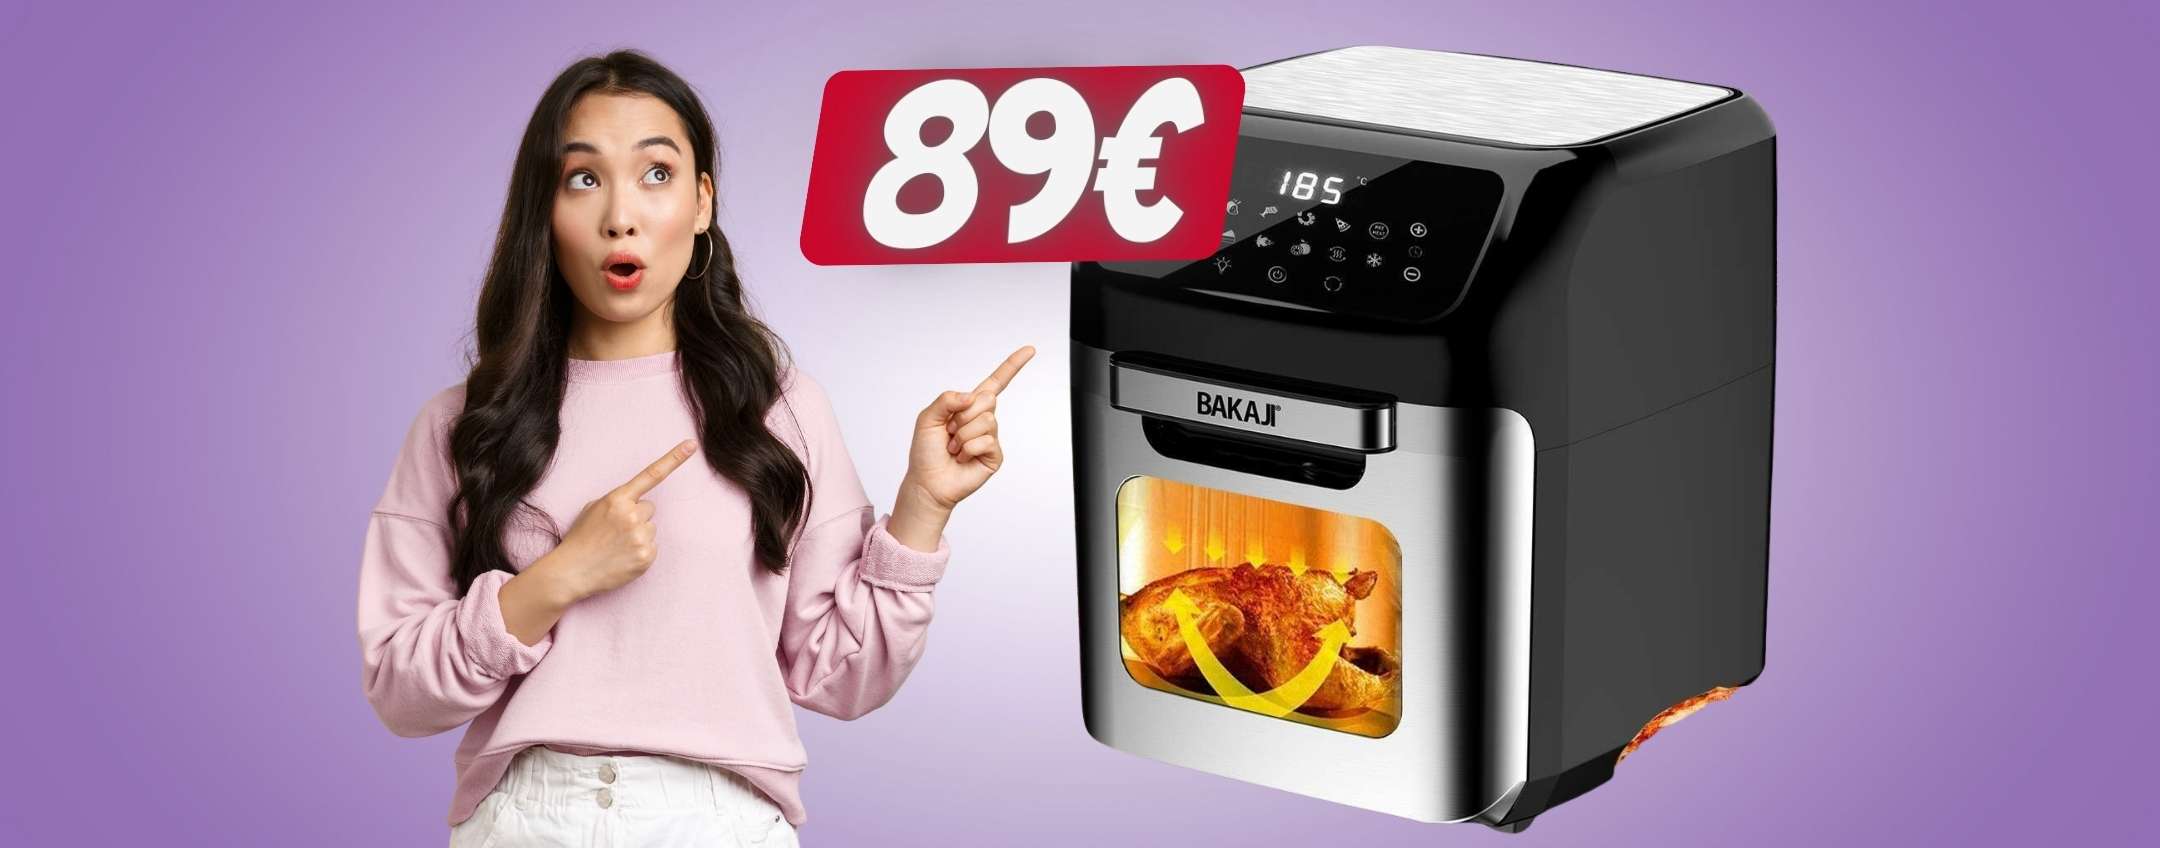 SOLO 89€ per questo forno e friggitrice ad aria da 12 litri ()